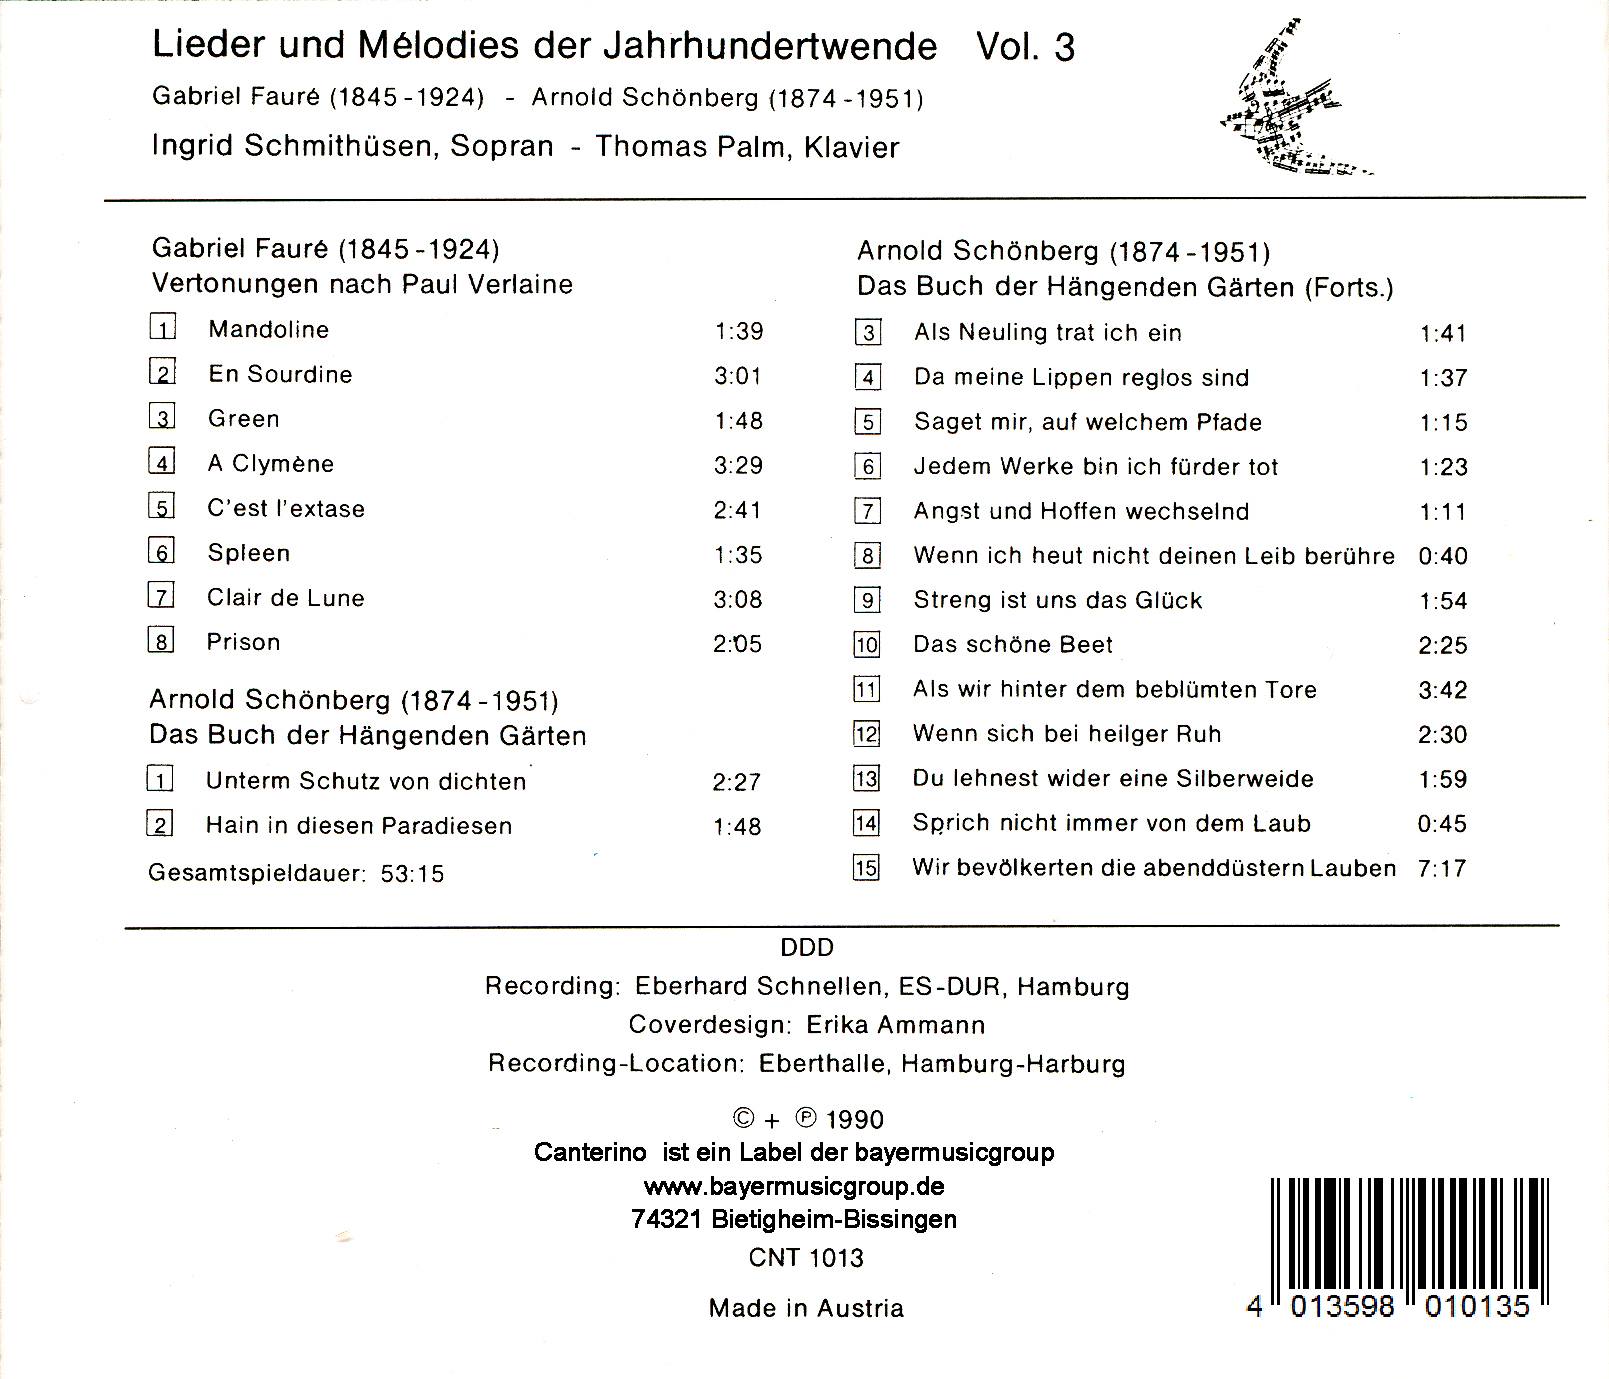 Lieder und Mélodies der Jahrhundertwende Vol. 3